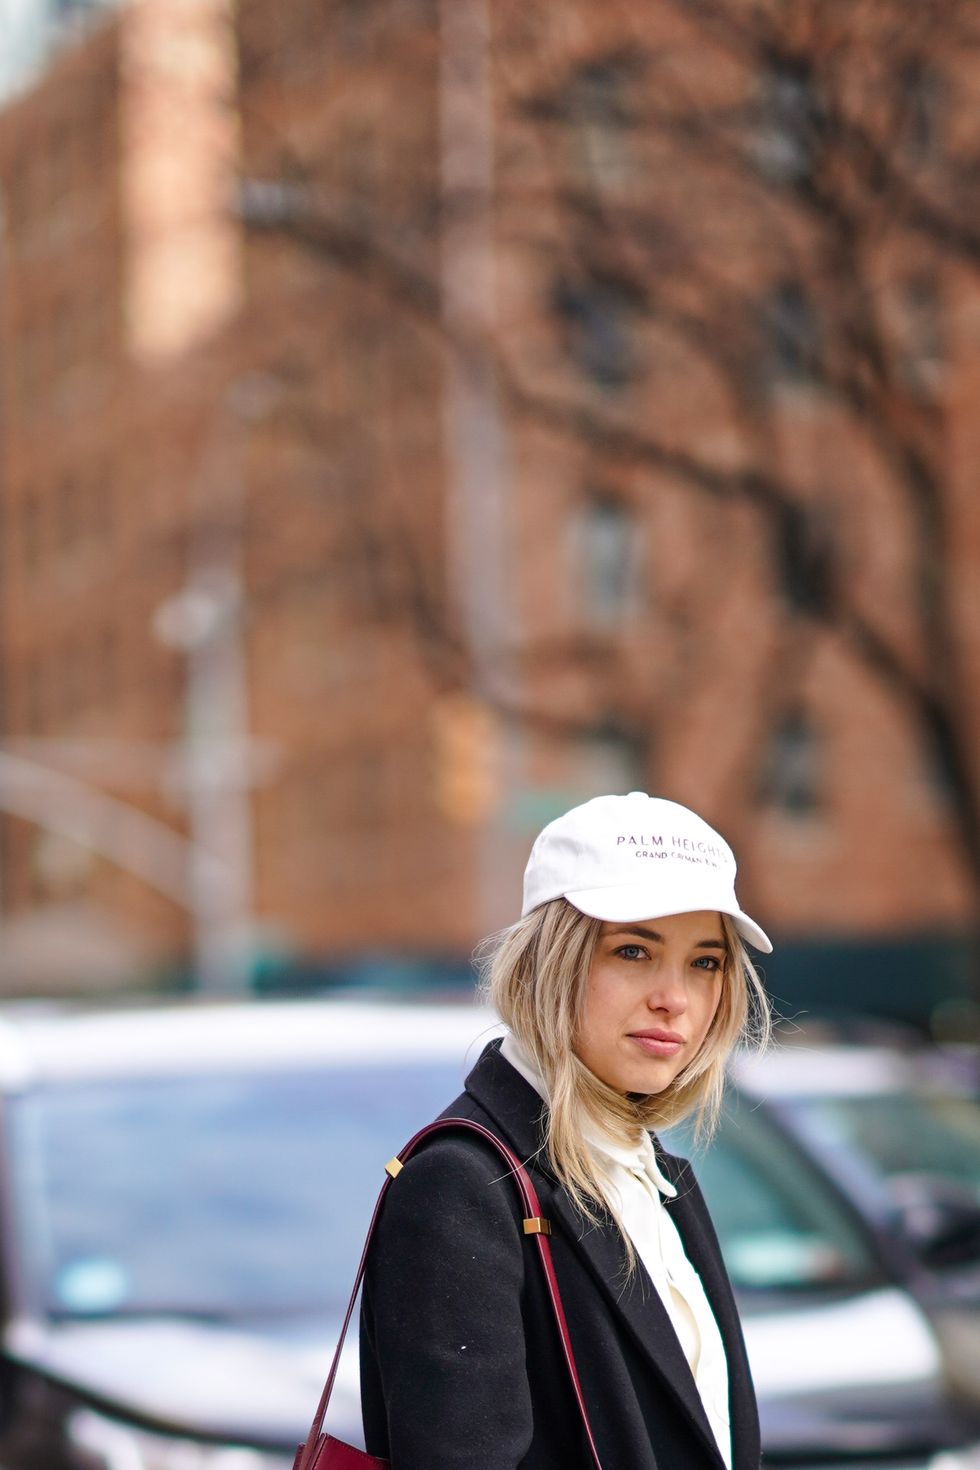 invitada de la new york fashion week luciendo un look blanco y negro con americana